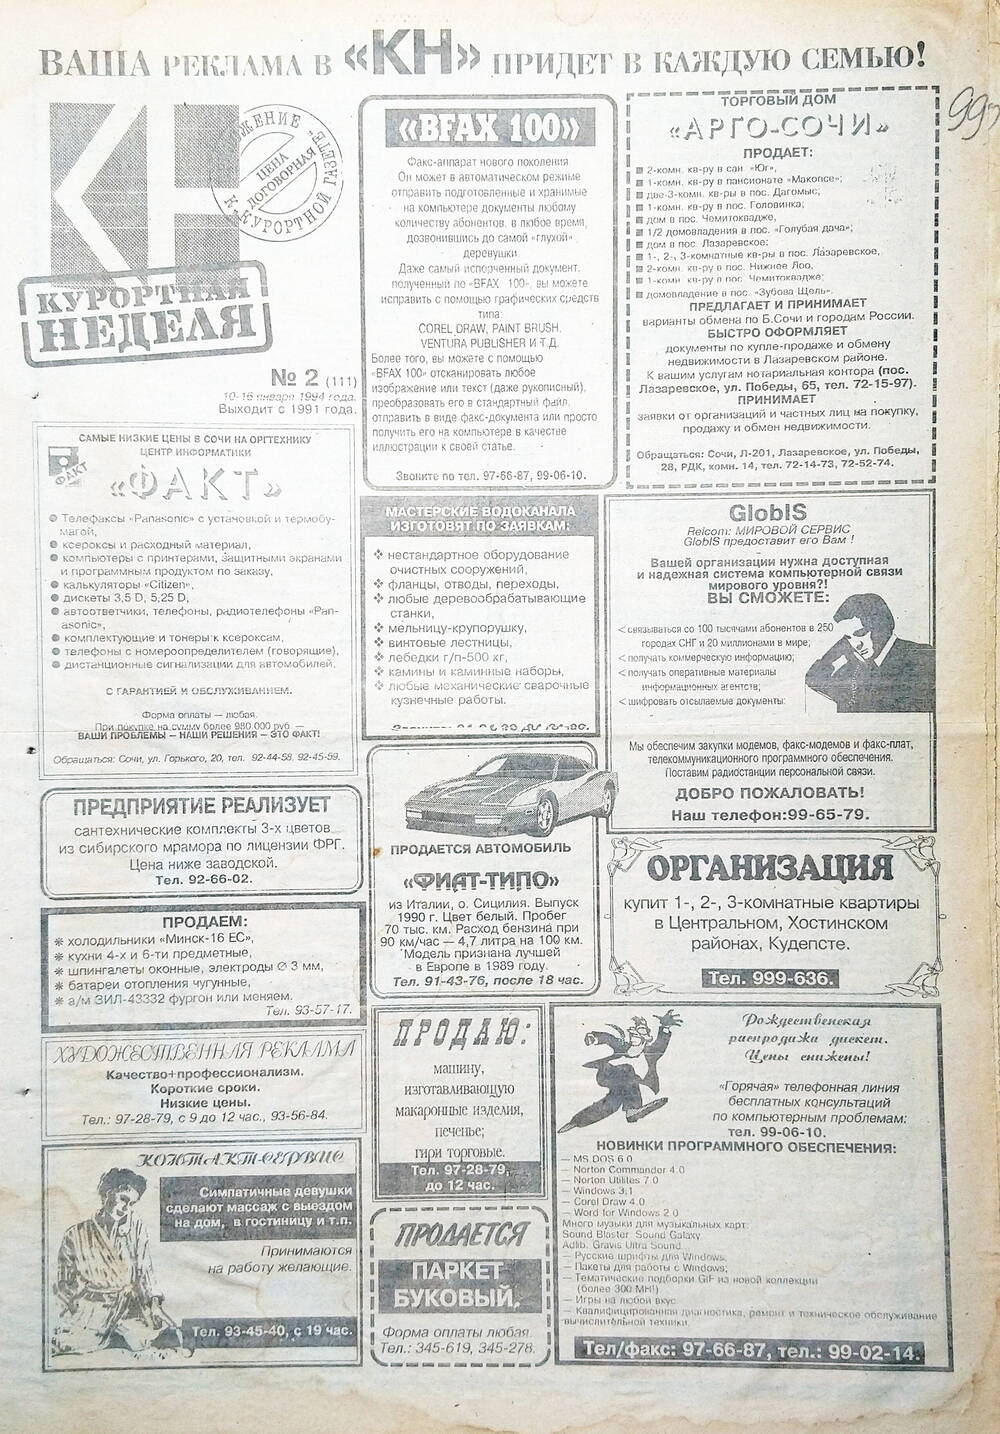 Газета еженедельная рекламно-информационная «Курортная неделя» № 2 (111), 10 - 16 января 1994 г.